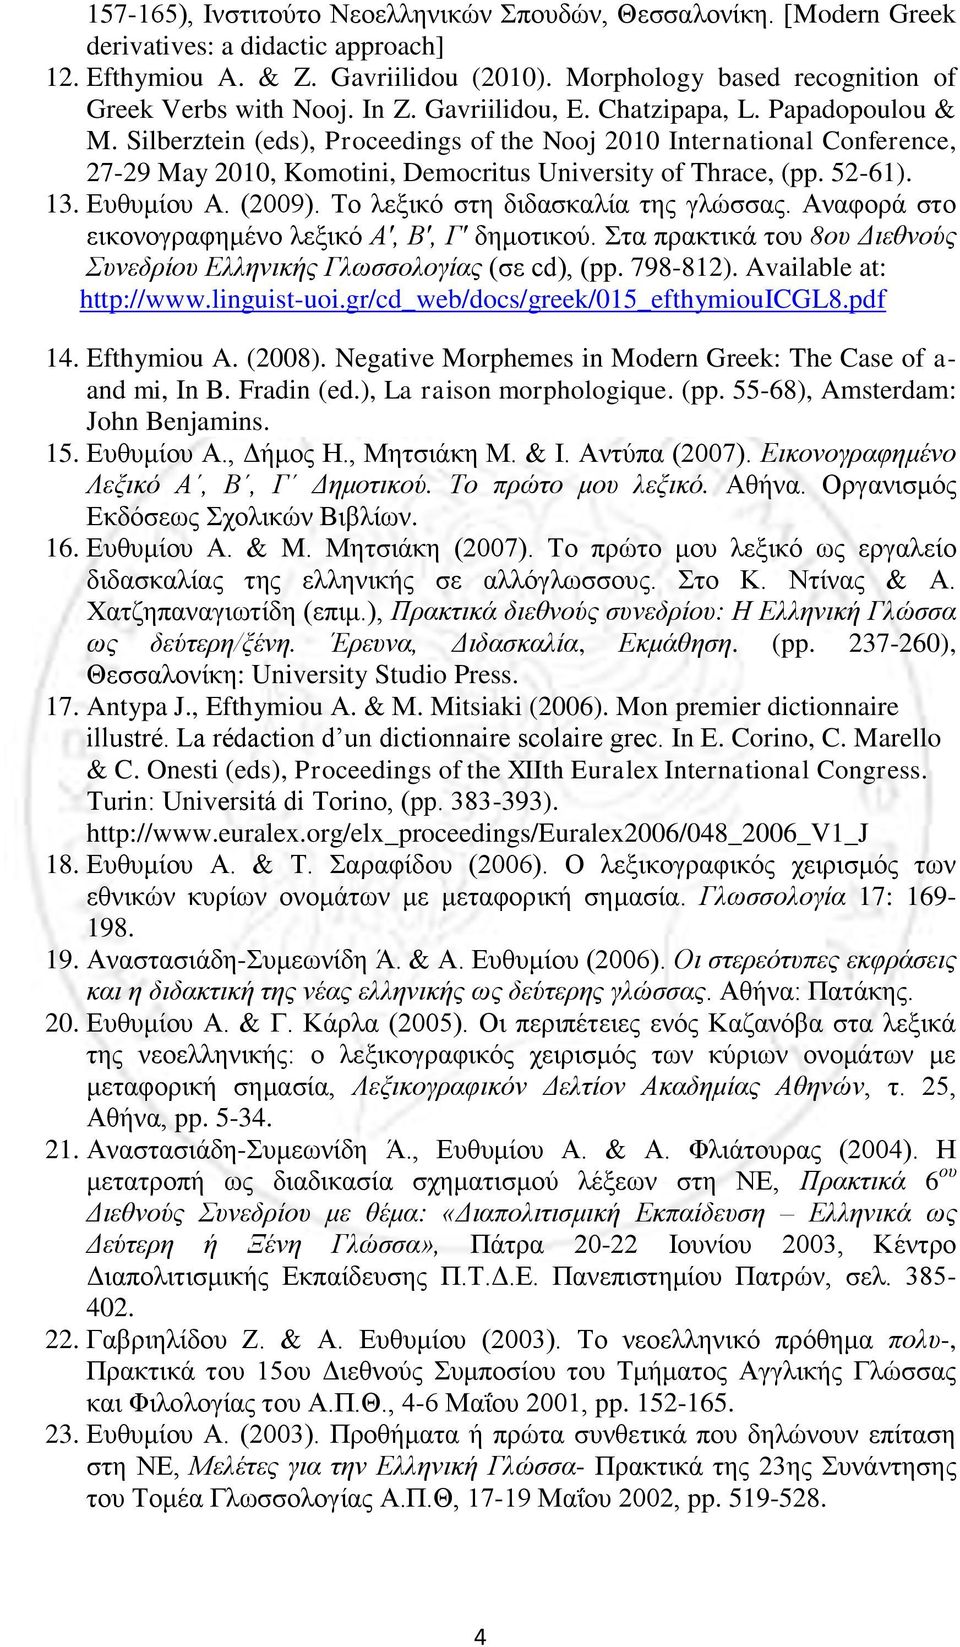 13. Ευθυμίου Α. (2009). Το λεξικό στη διδασκαλία της γλώσσας. Αναφορά στο εικονογραφημένο λεξικό Α', Β', Γ' δημοτικού. Στα πρακτικά του 8ου Διεθνούς Συνεδρίου Ελληνικής Γλωσσολογίας (σε cd), (pp.